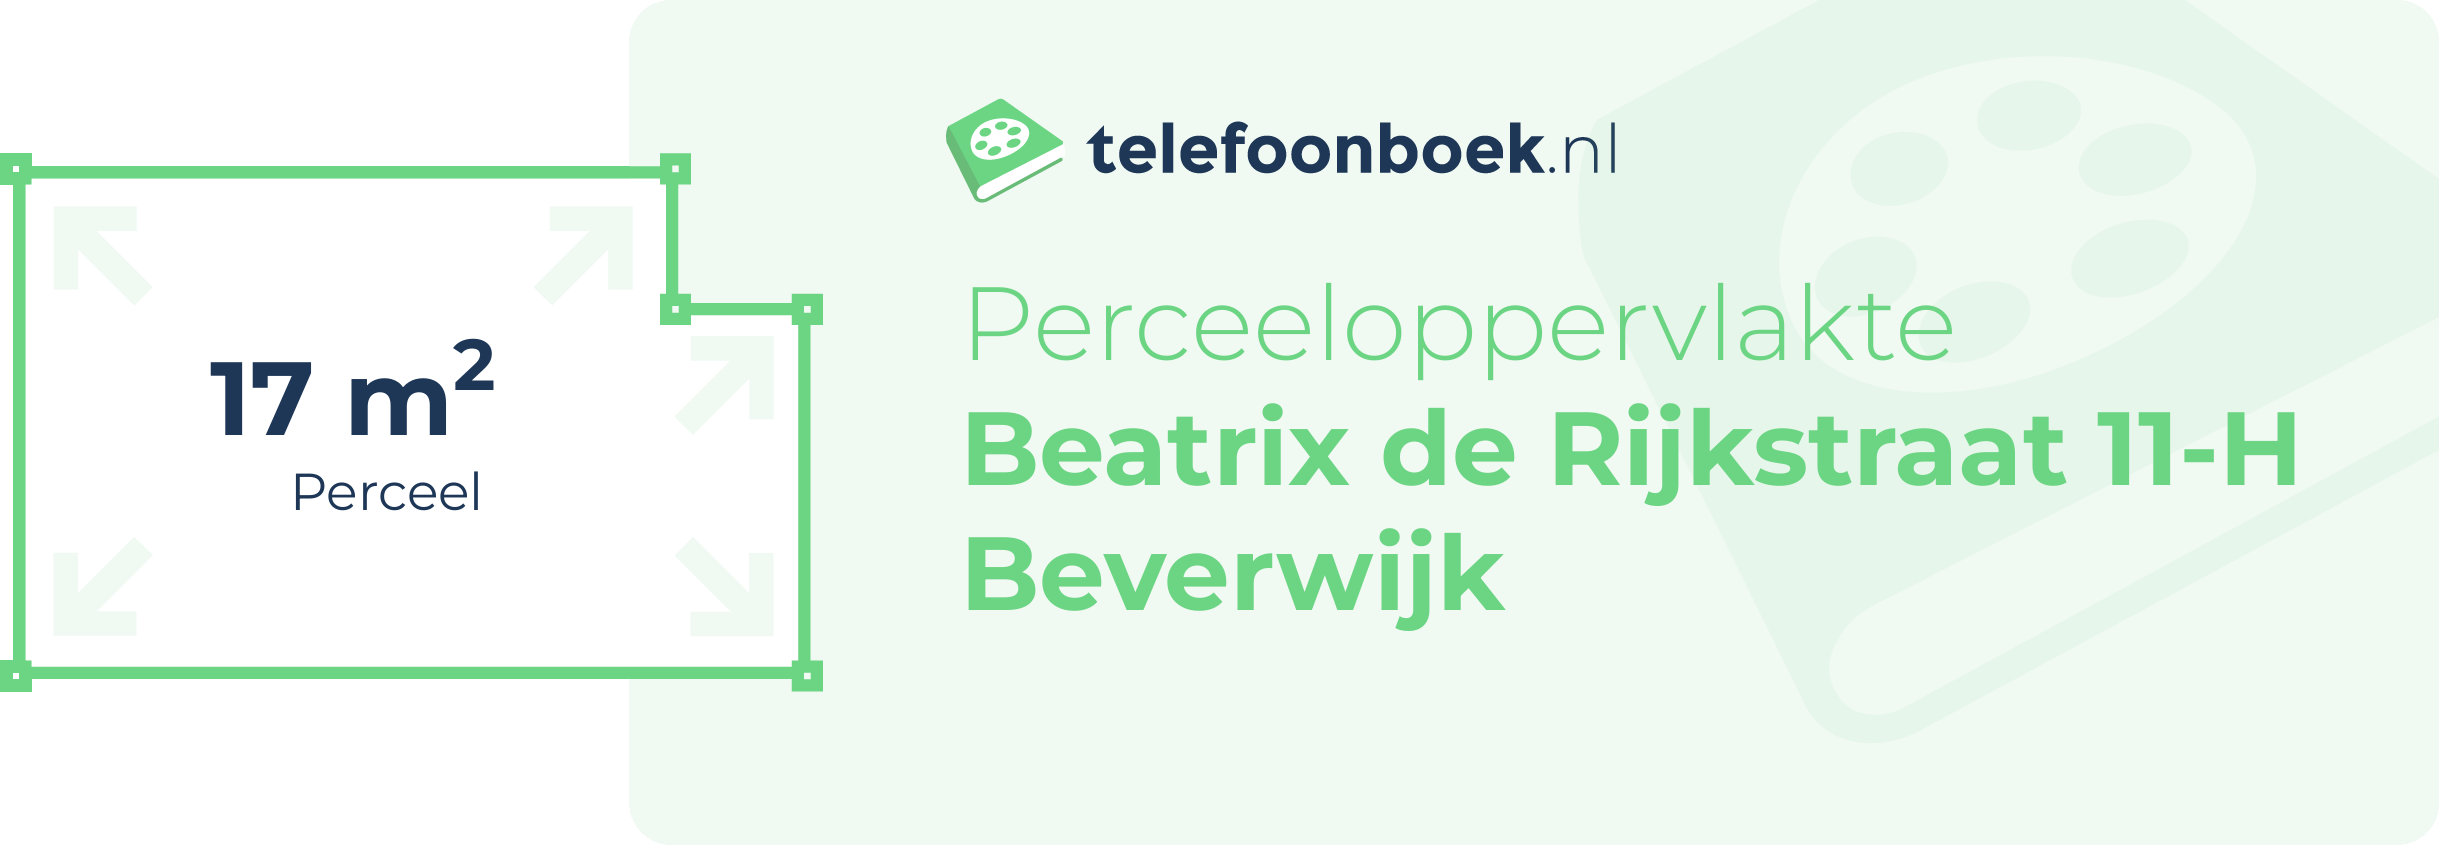 Perceeloppervlakte Beatrix De Rijkstraat 11-H Beverwijk